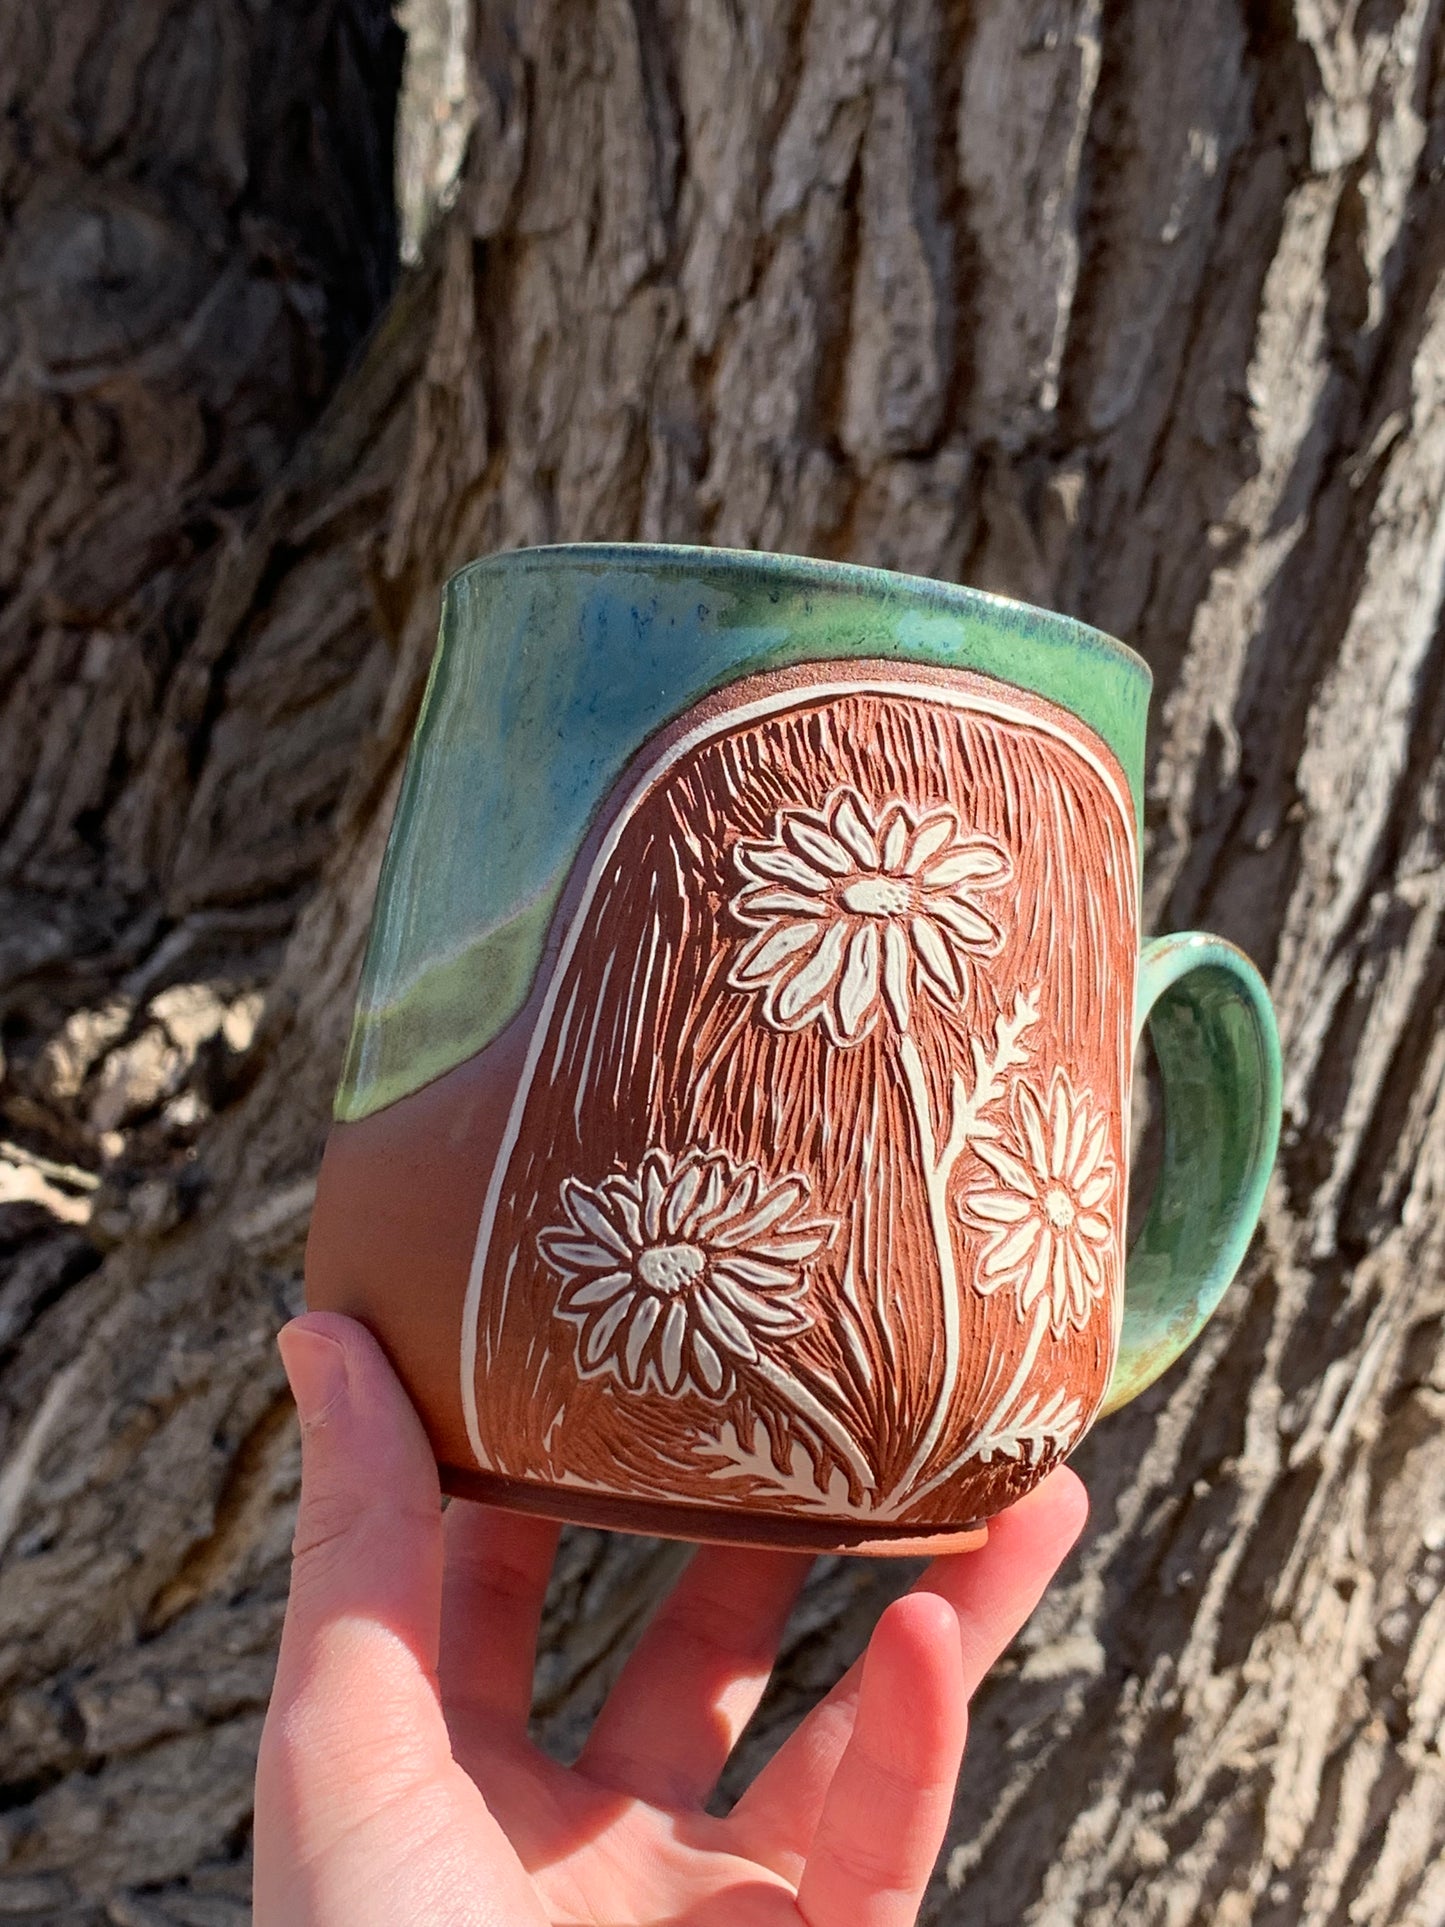 009 Wildflower Mug